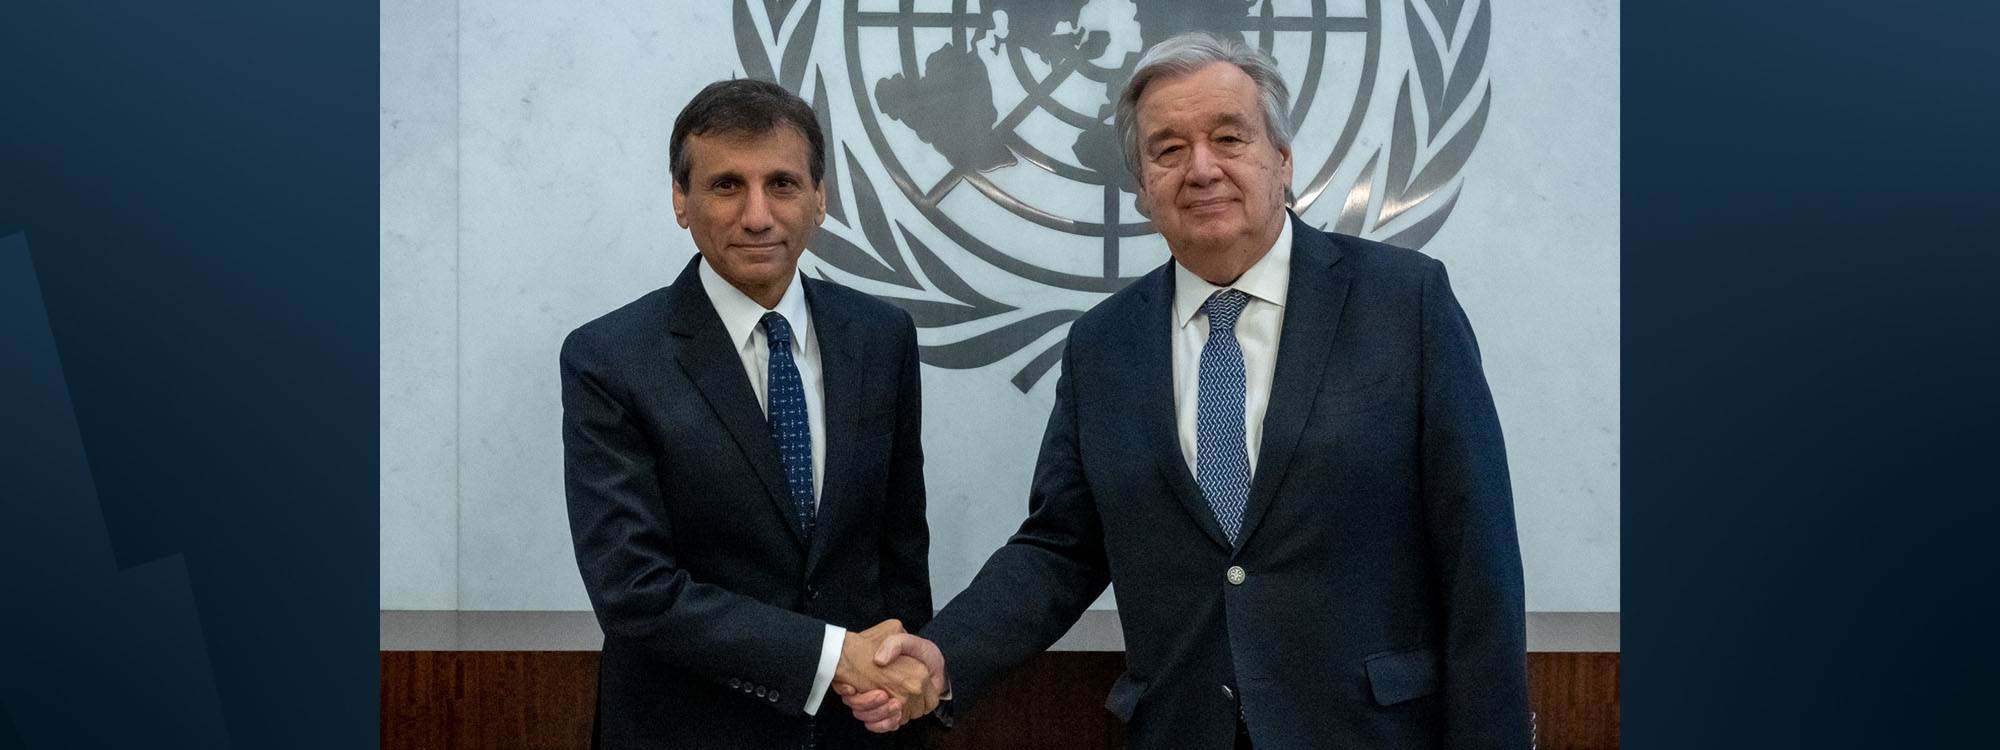 UN chief appoints new special representative for Iraq